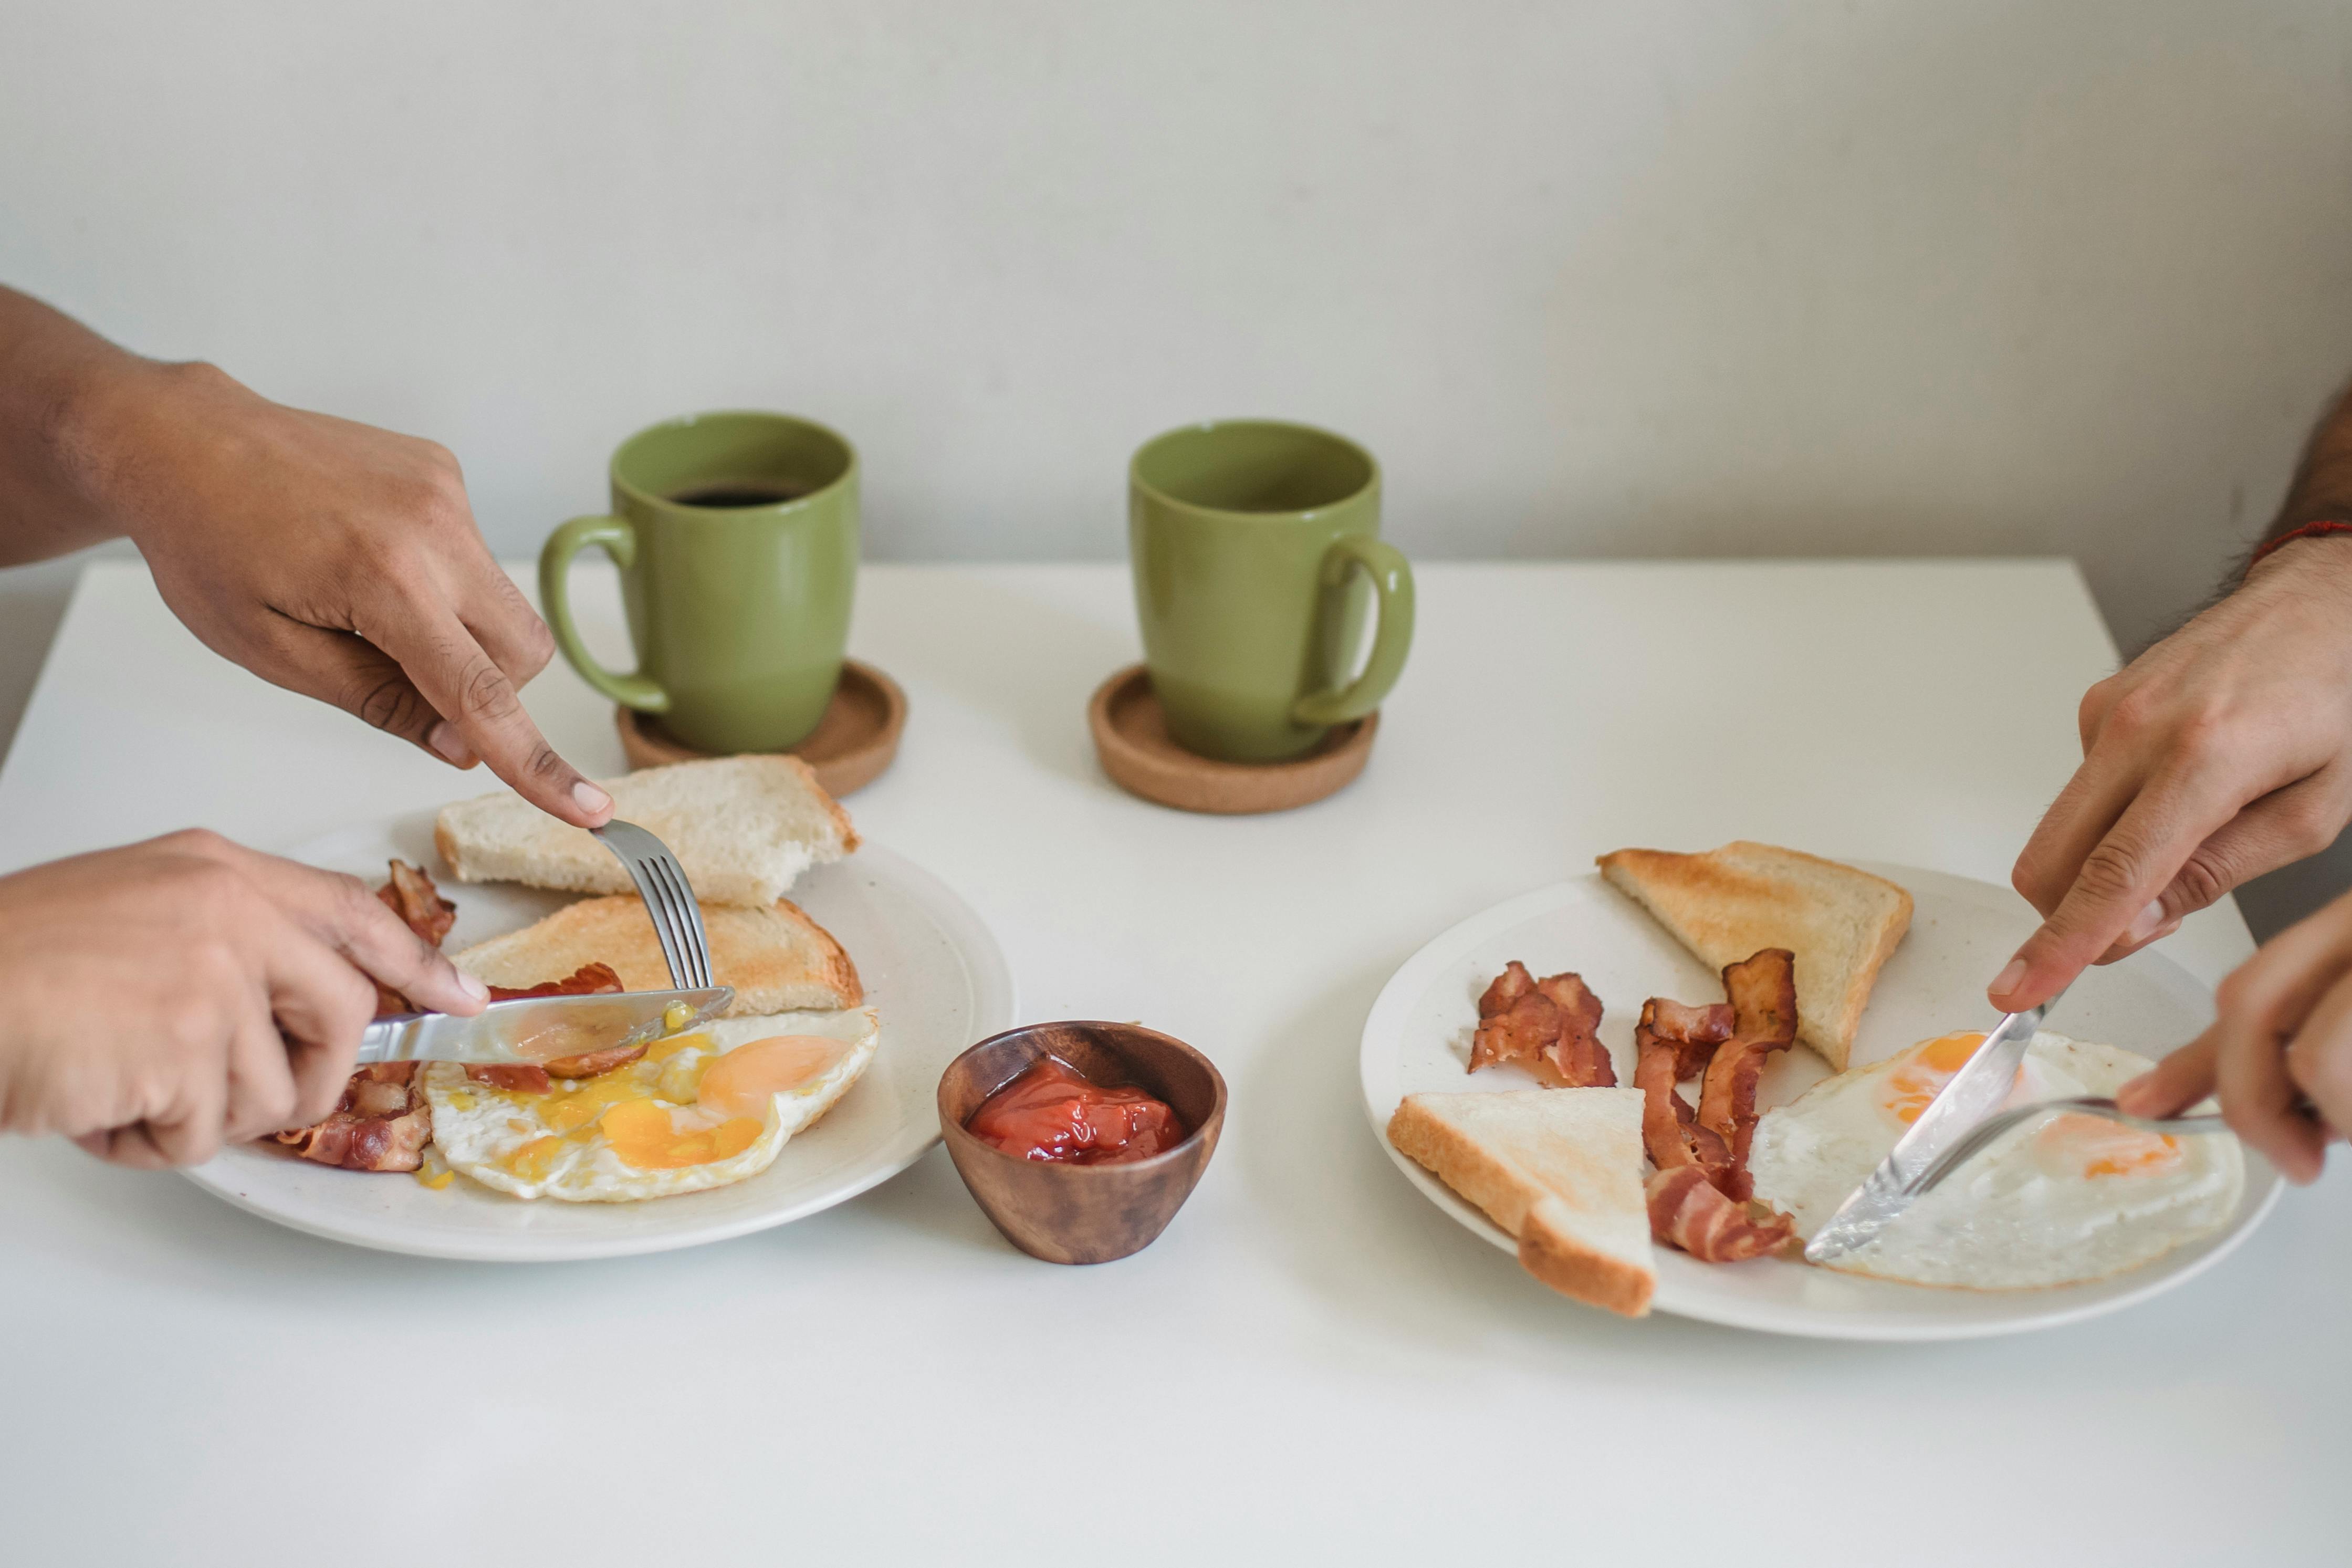 Deux personnes prenant leur petit déjeuner | Source : Pexels